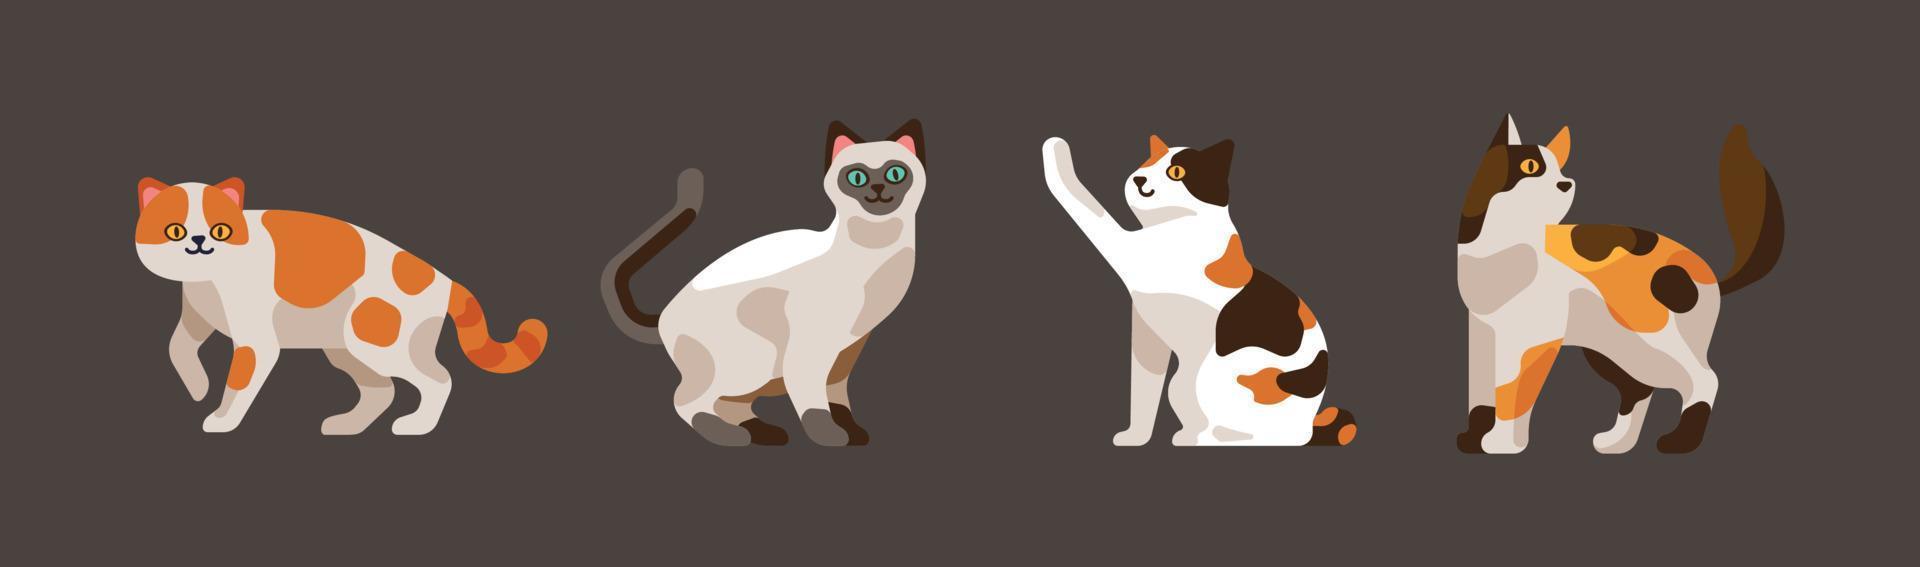 Cartoon-Katze mit verschiedenen Posen und Emotionen. Katzenverhalten, Körpersprache und Gesichtsausdrücke. Ingwerkätzchen im einfachen niedlichen Stil, isolierte Vektorillustration vektor